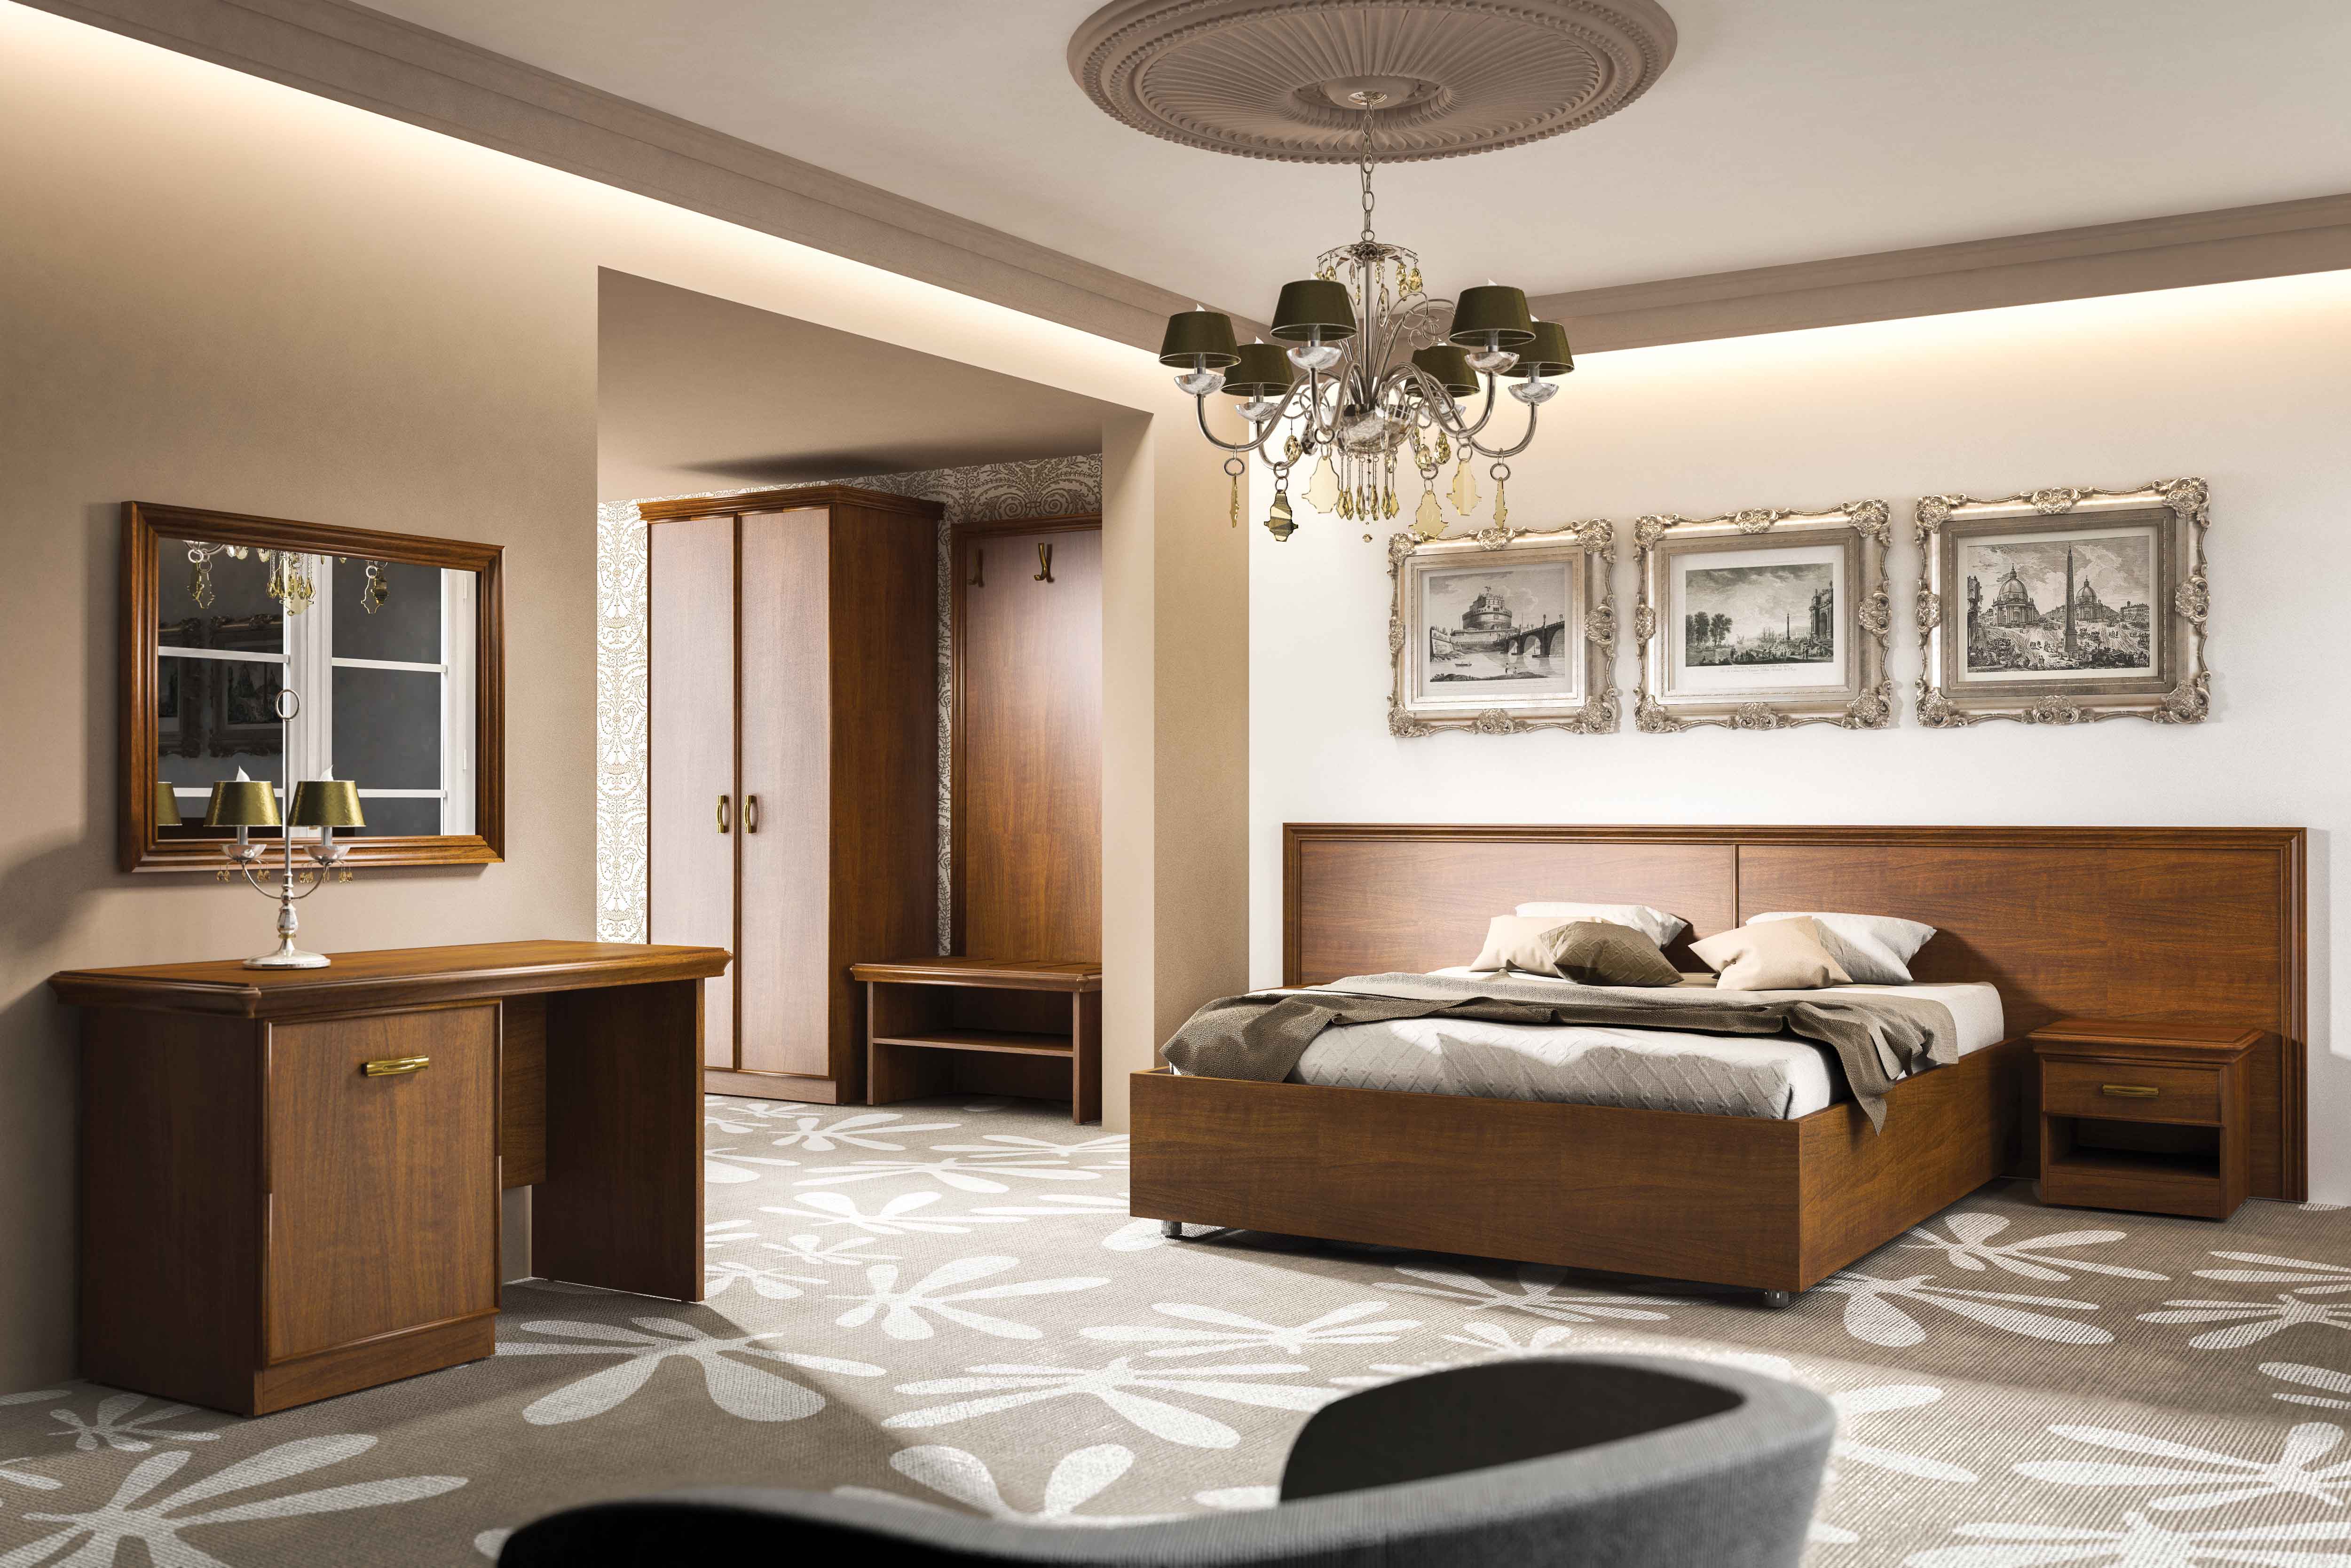 Эта деревянная двухъярусная кровать подойдет для общежитий, стильных хостелов, минигостинниц и других подобных заведений